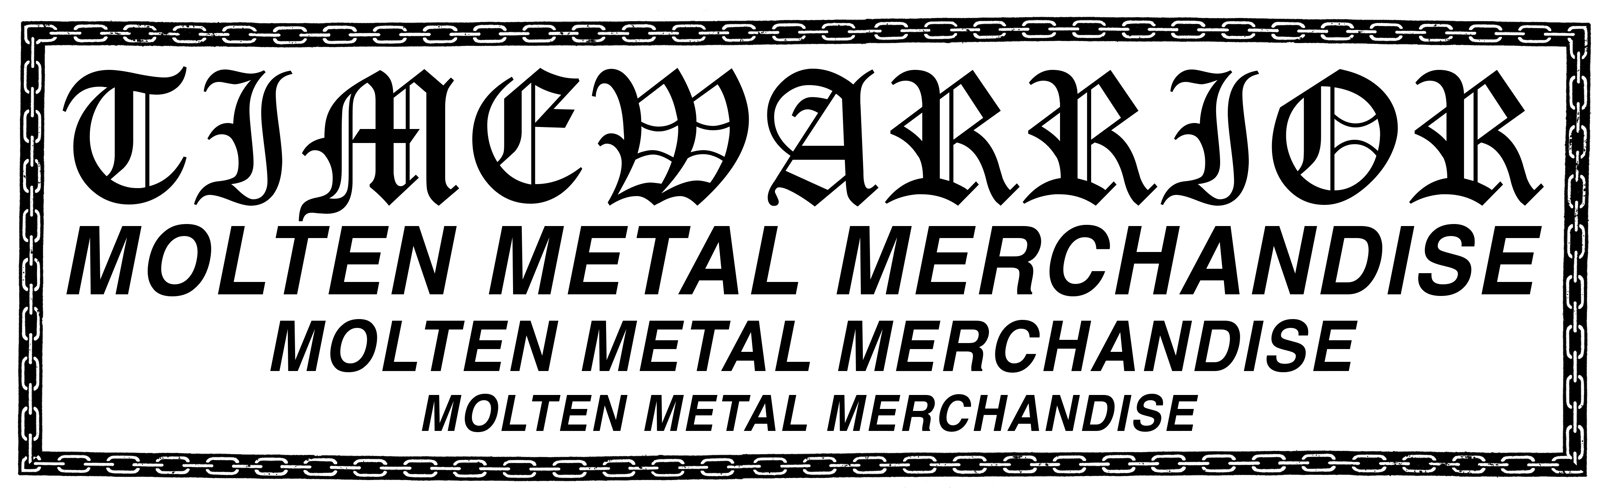 TIMEWARRIOR: Molten Metal Merchandise